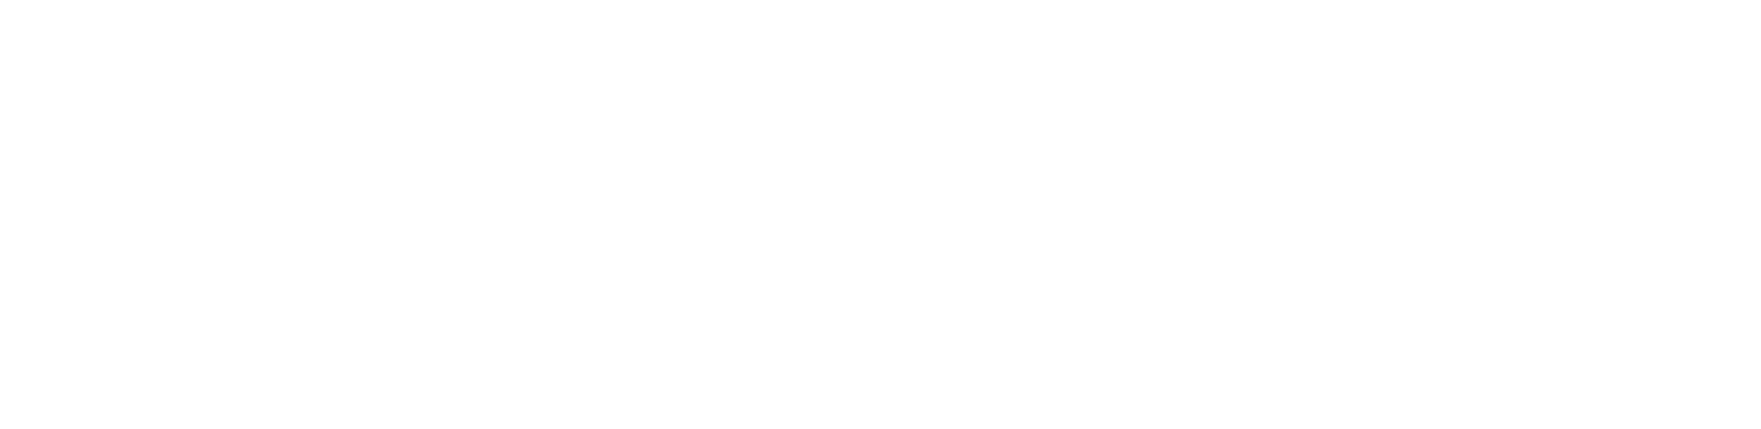 Williams Aerospace & Manufacturing